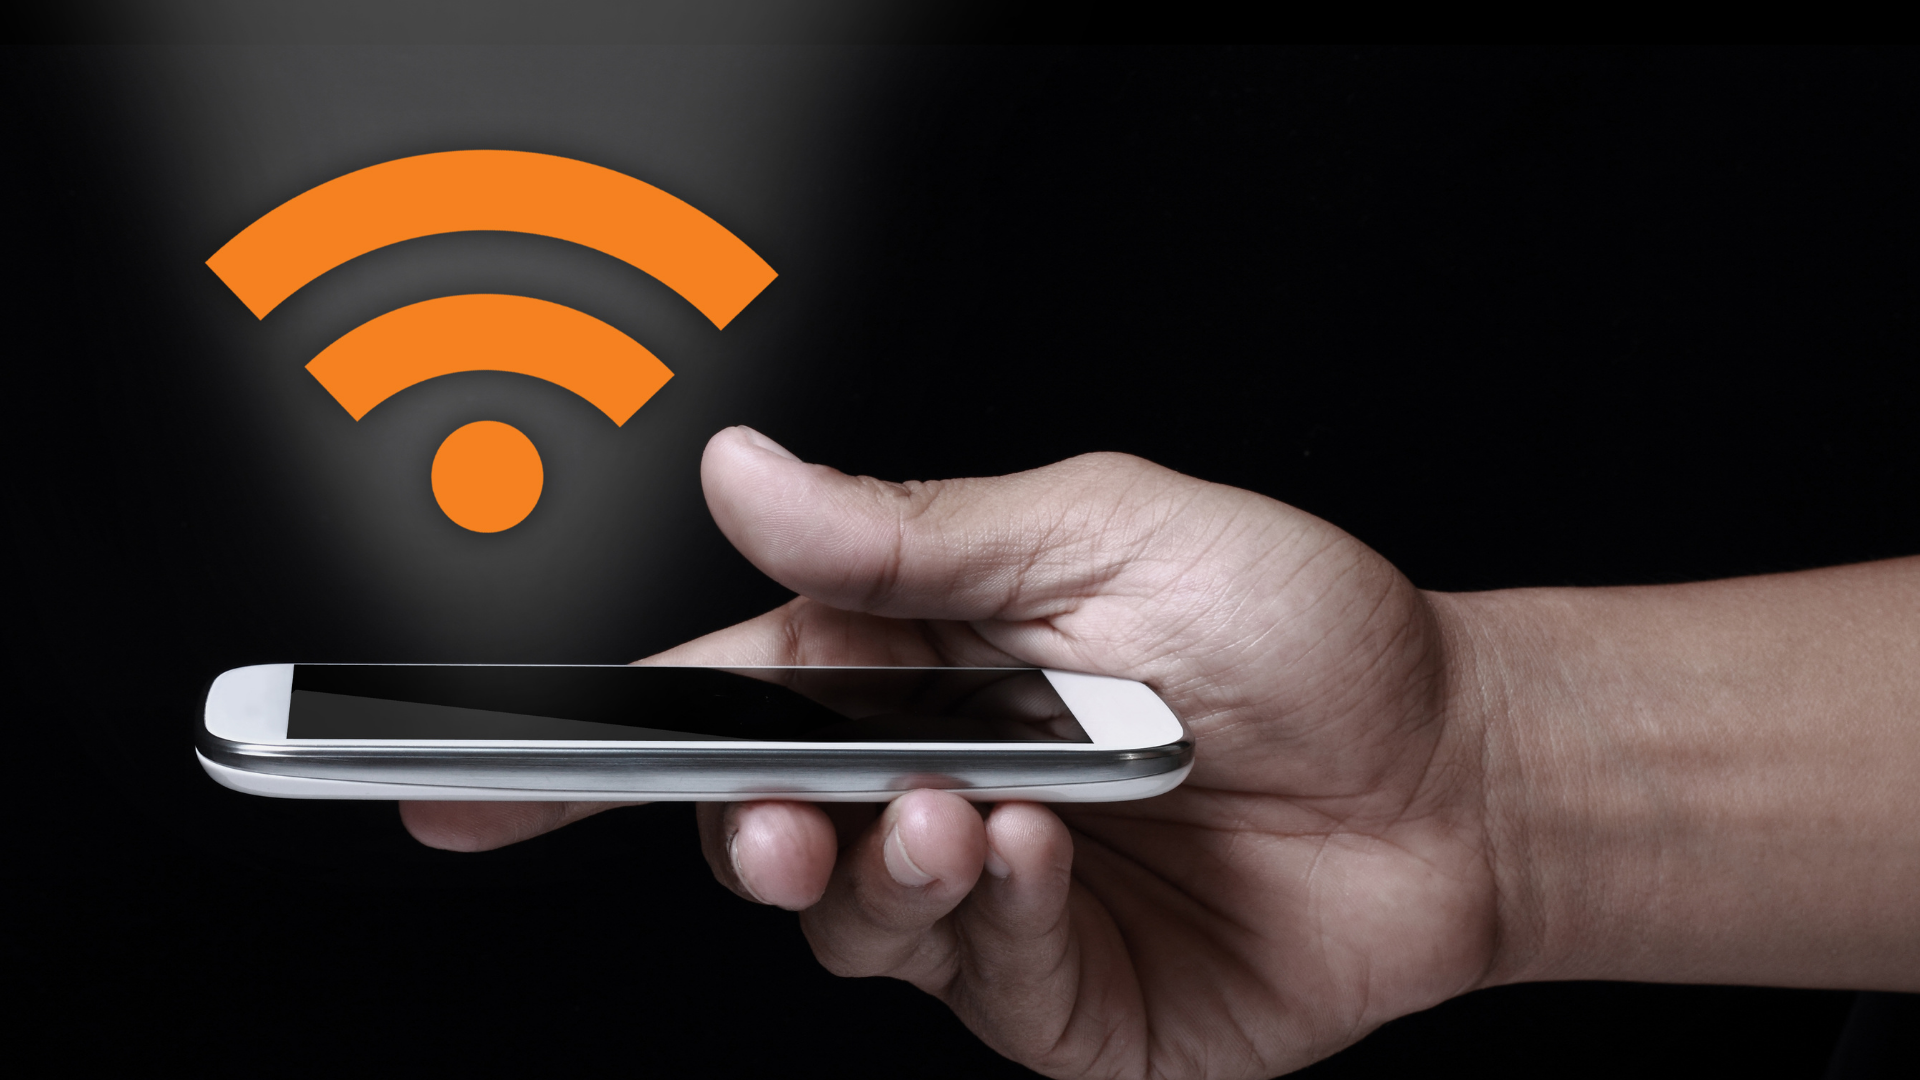 มือถือ Redmi ต่อ Wi-Fi ไม่ได้ - ร้านซ่อมโทรศัพท์มือถือ ออนไลน์